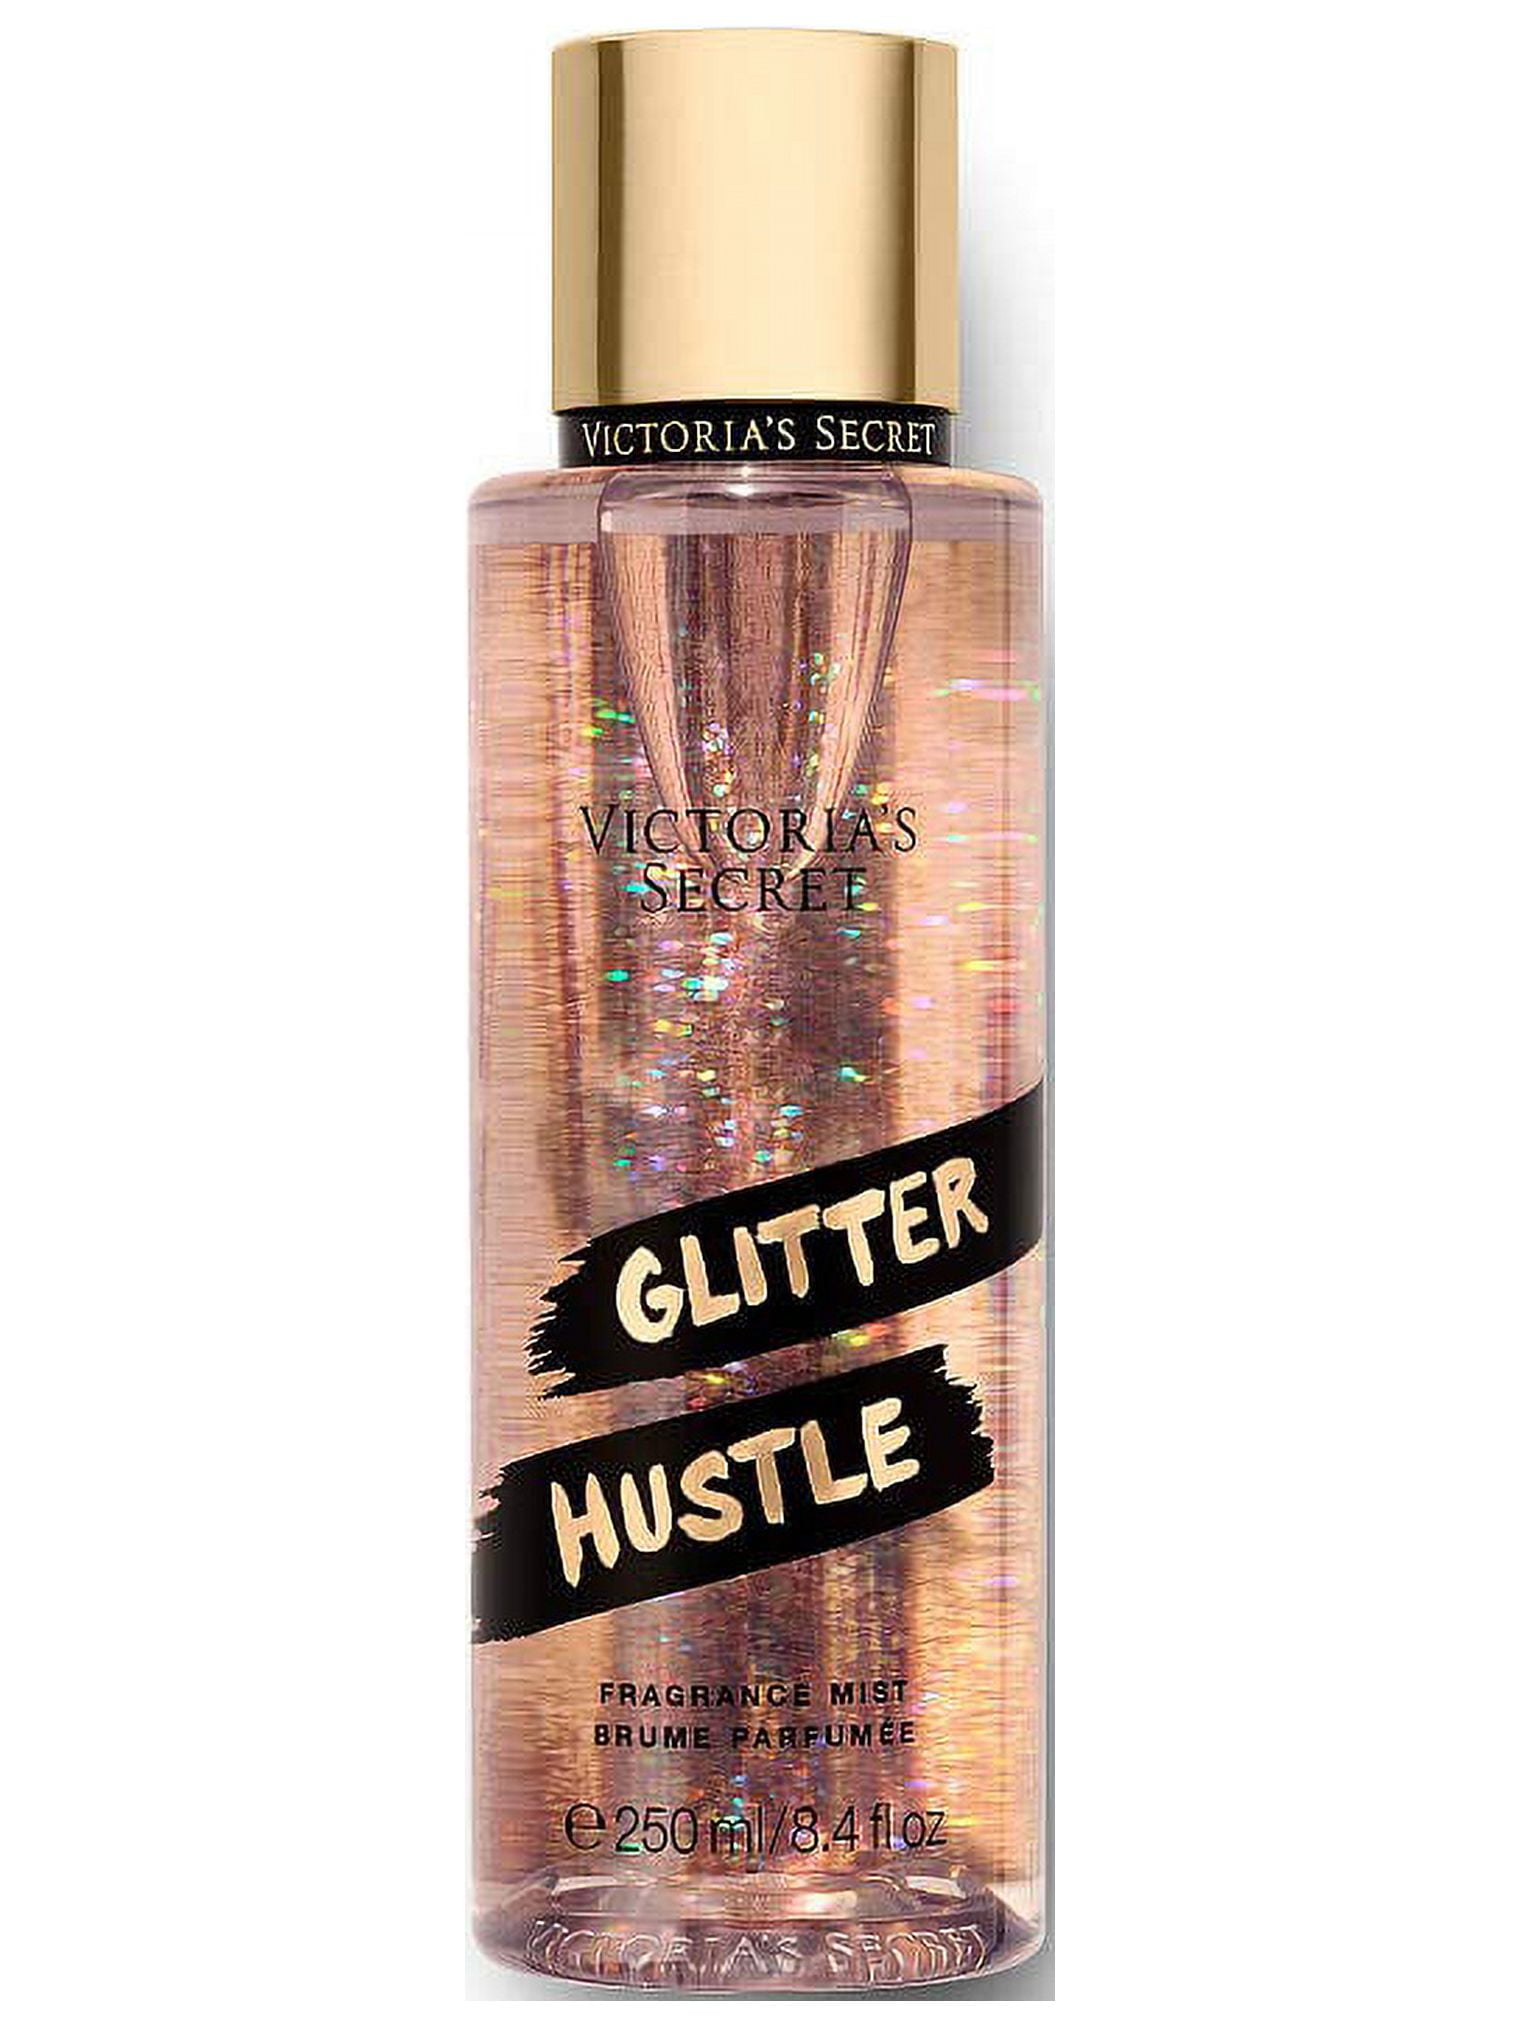 Victoria's Secret Glitter Hustle For Women Body Mist Spray, 8.4 oz/ 250 ml